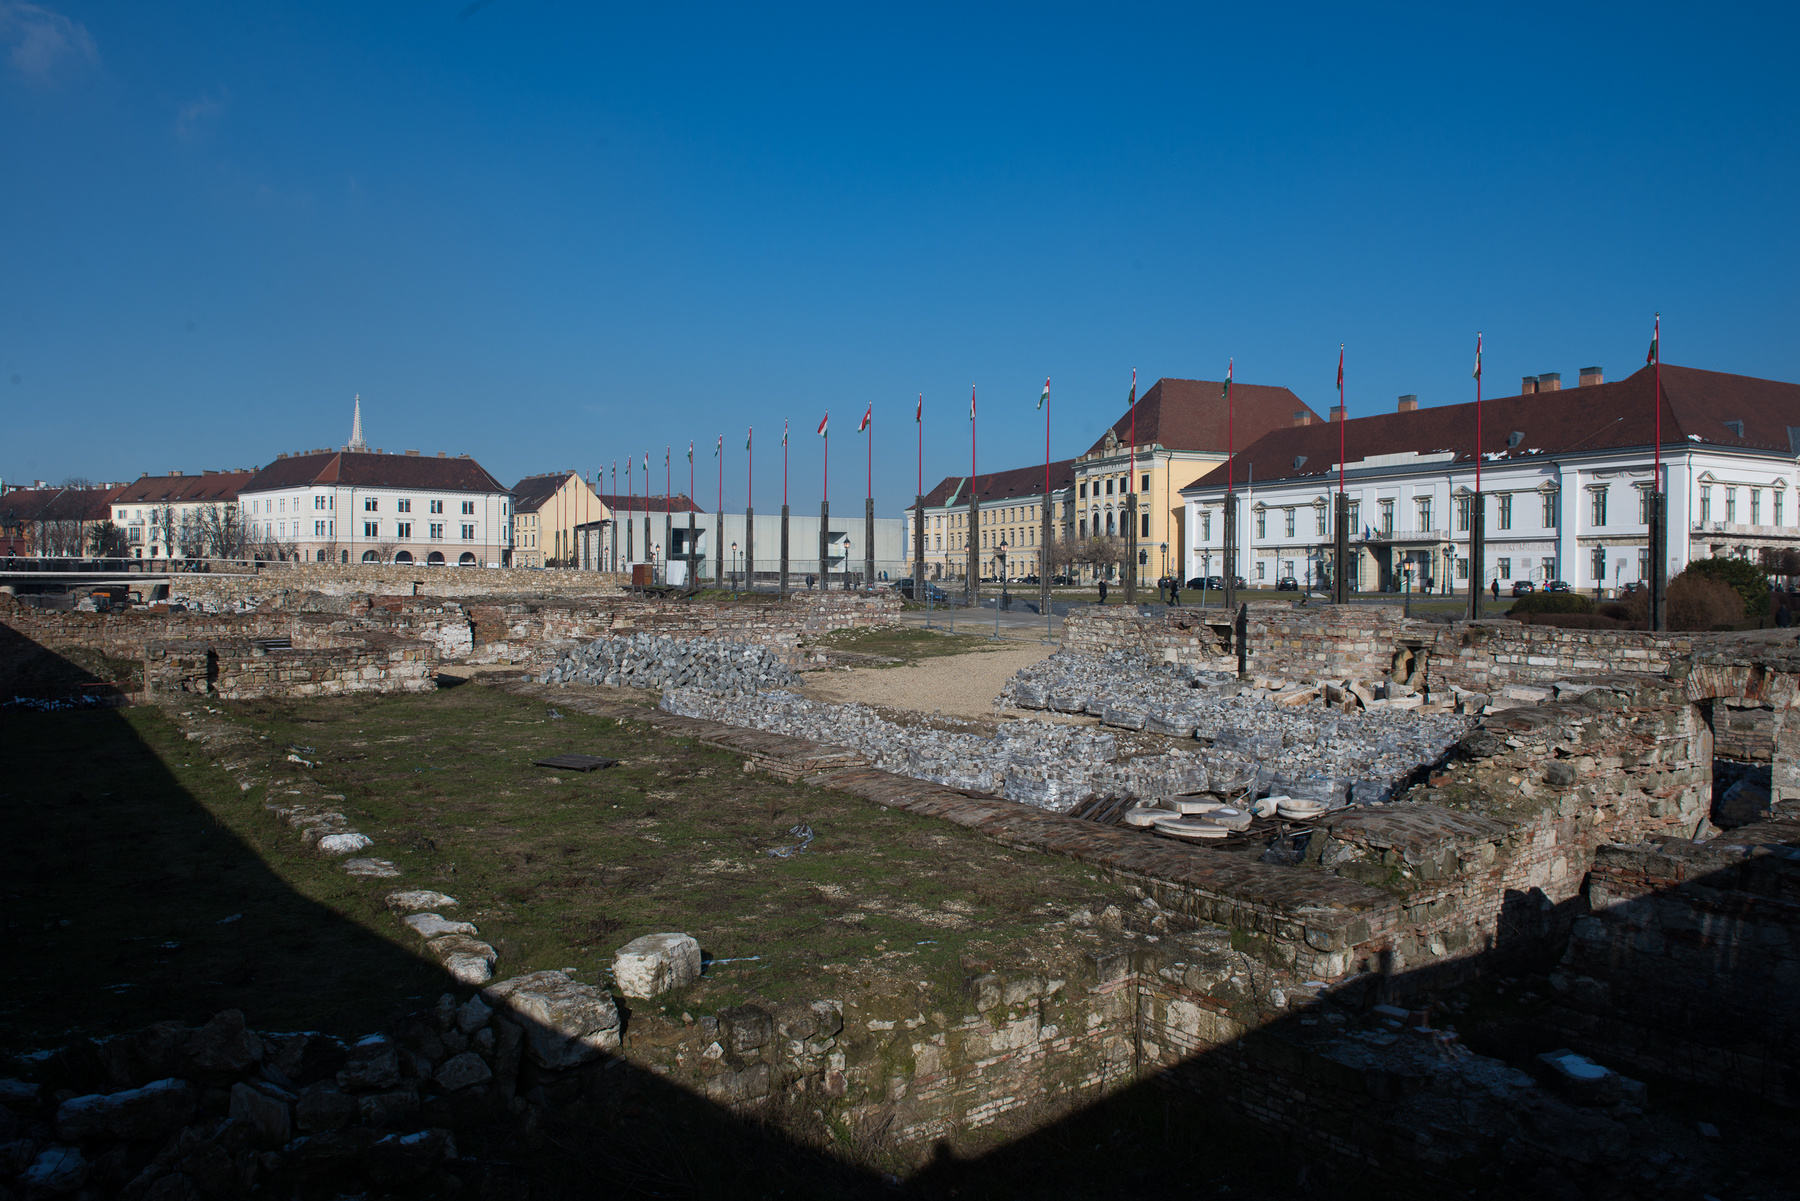 A mostani tízemeletes ház helyén volt a zsidó temető, ami egészen a 18. századig használatban volt. Ide temették Werbőczy Istvánt is, mivel éppen járvány volt, és a városfalon belül nem lehetett temetkezni. 